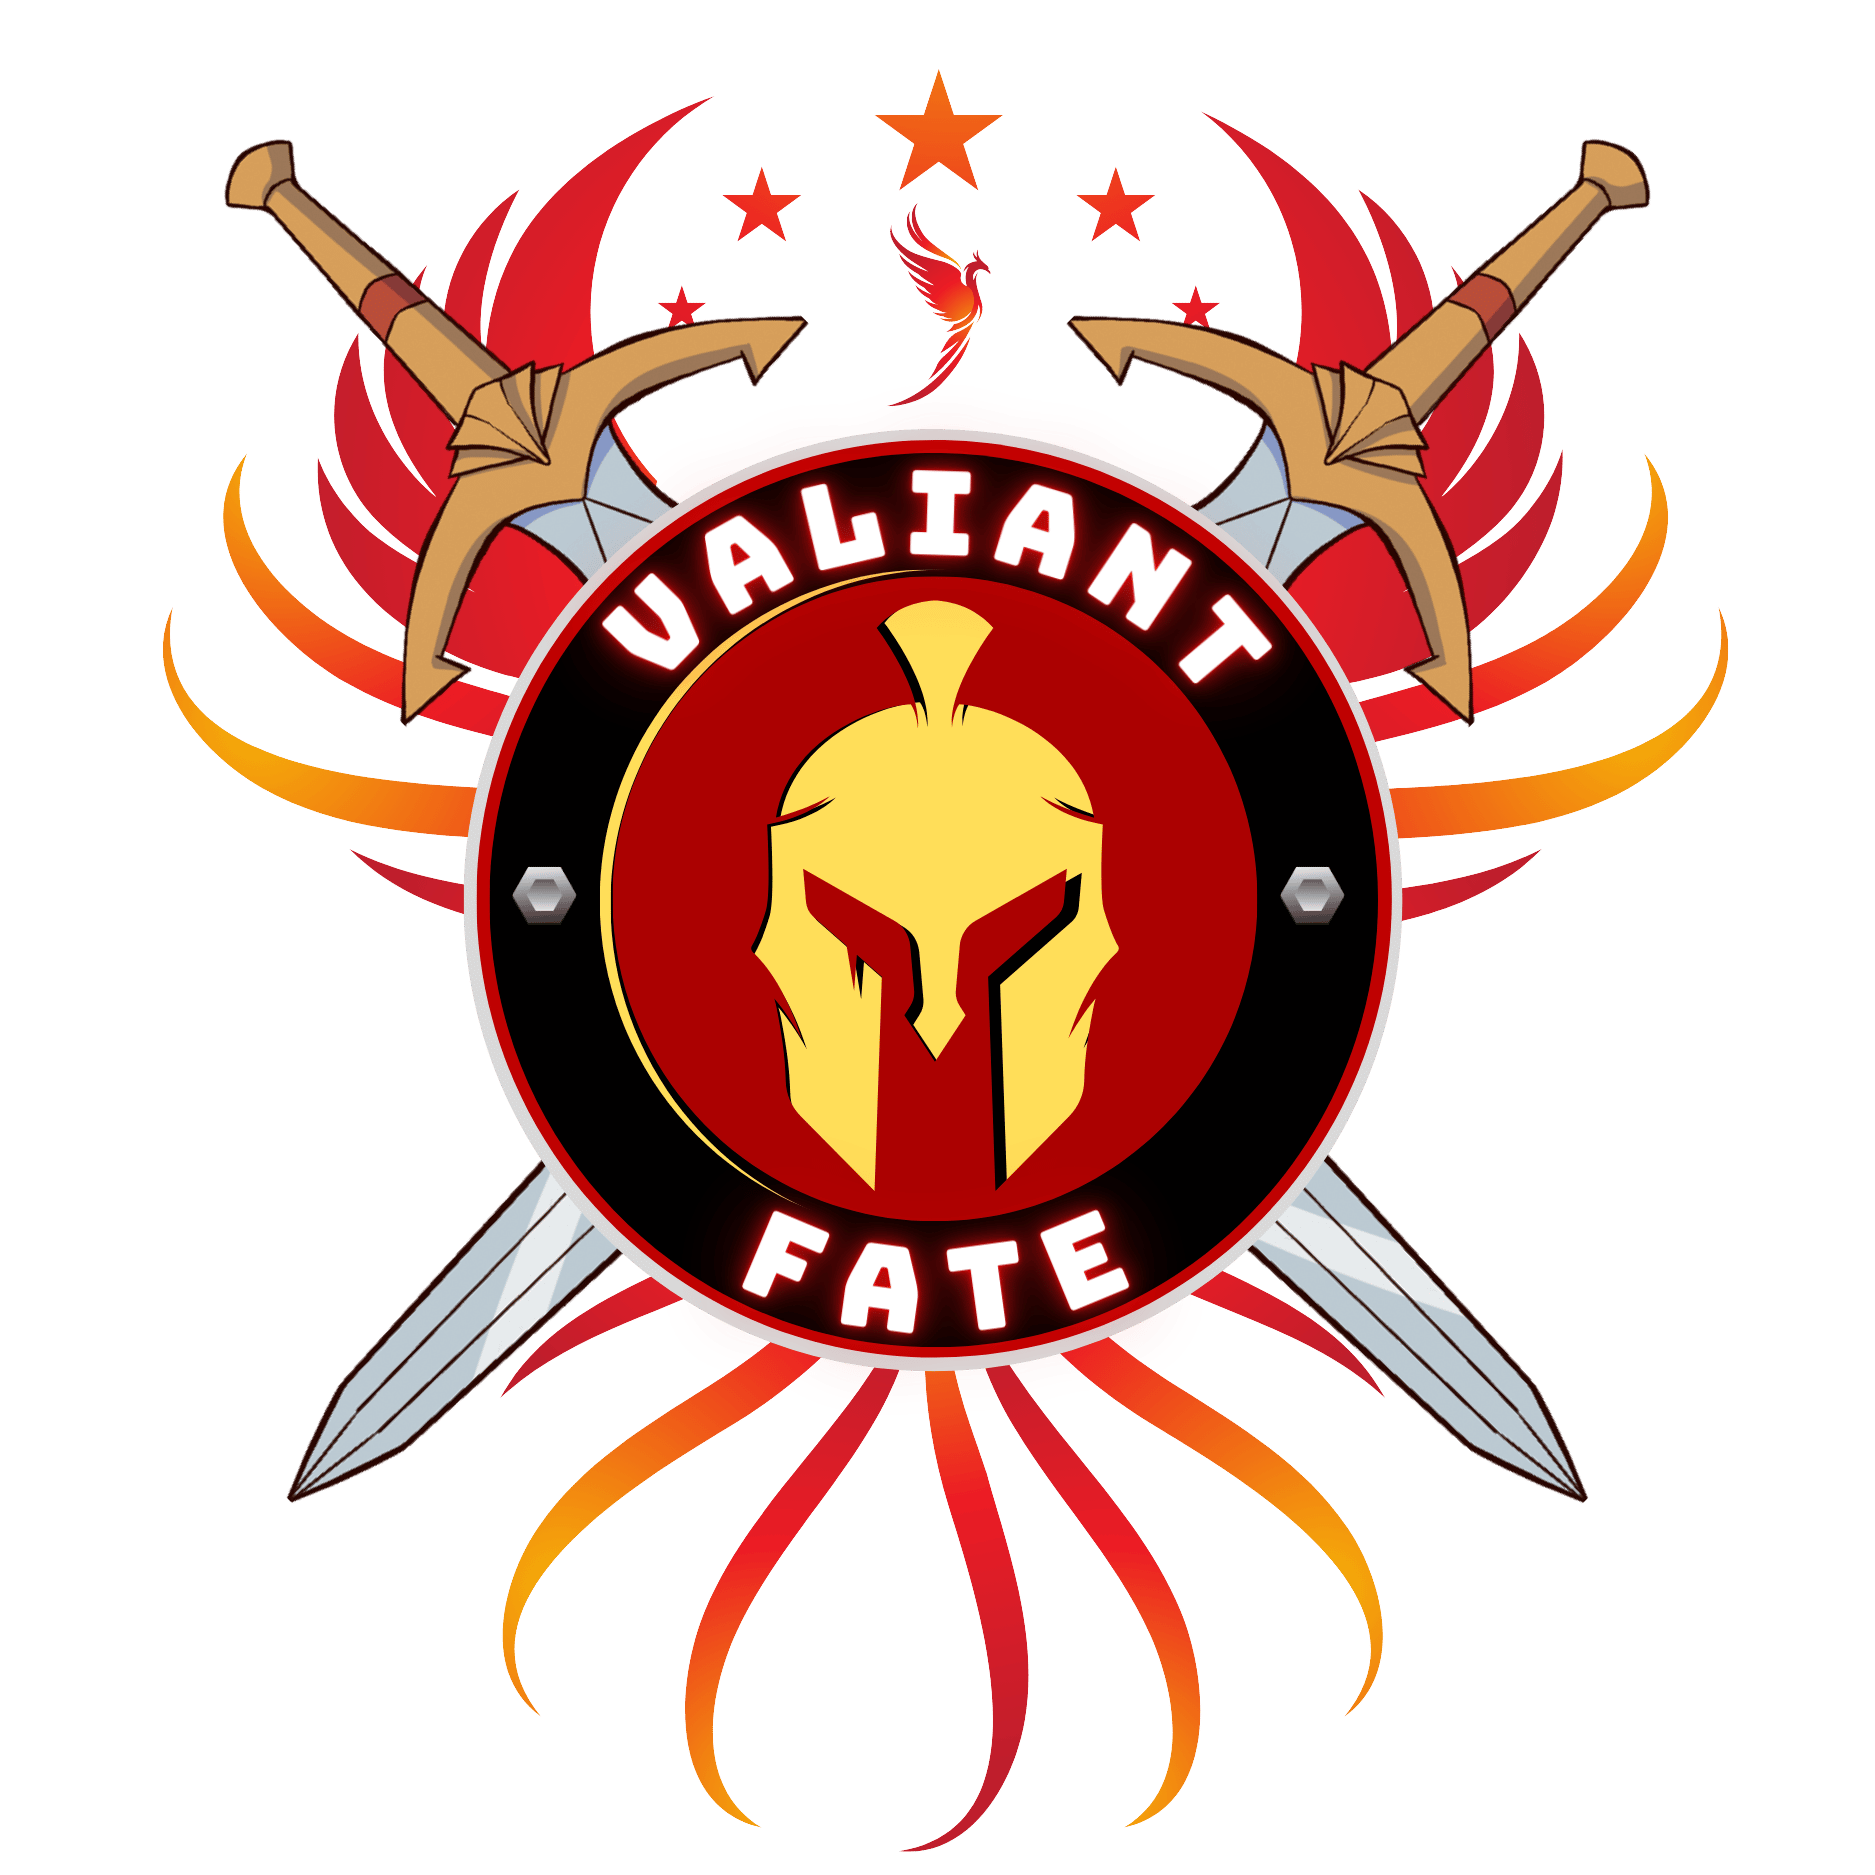 Valiant Fate - Summon the Warrior Within